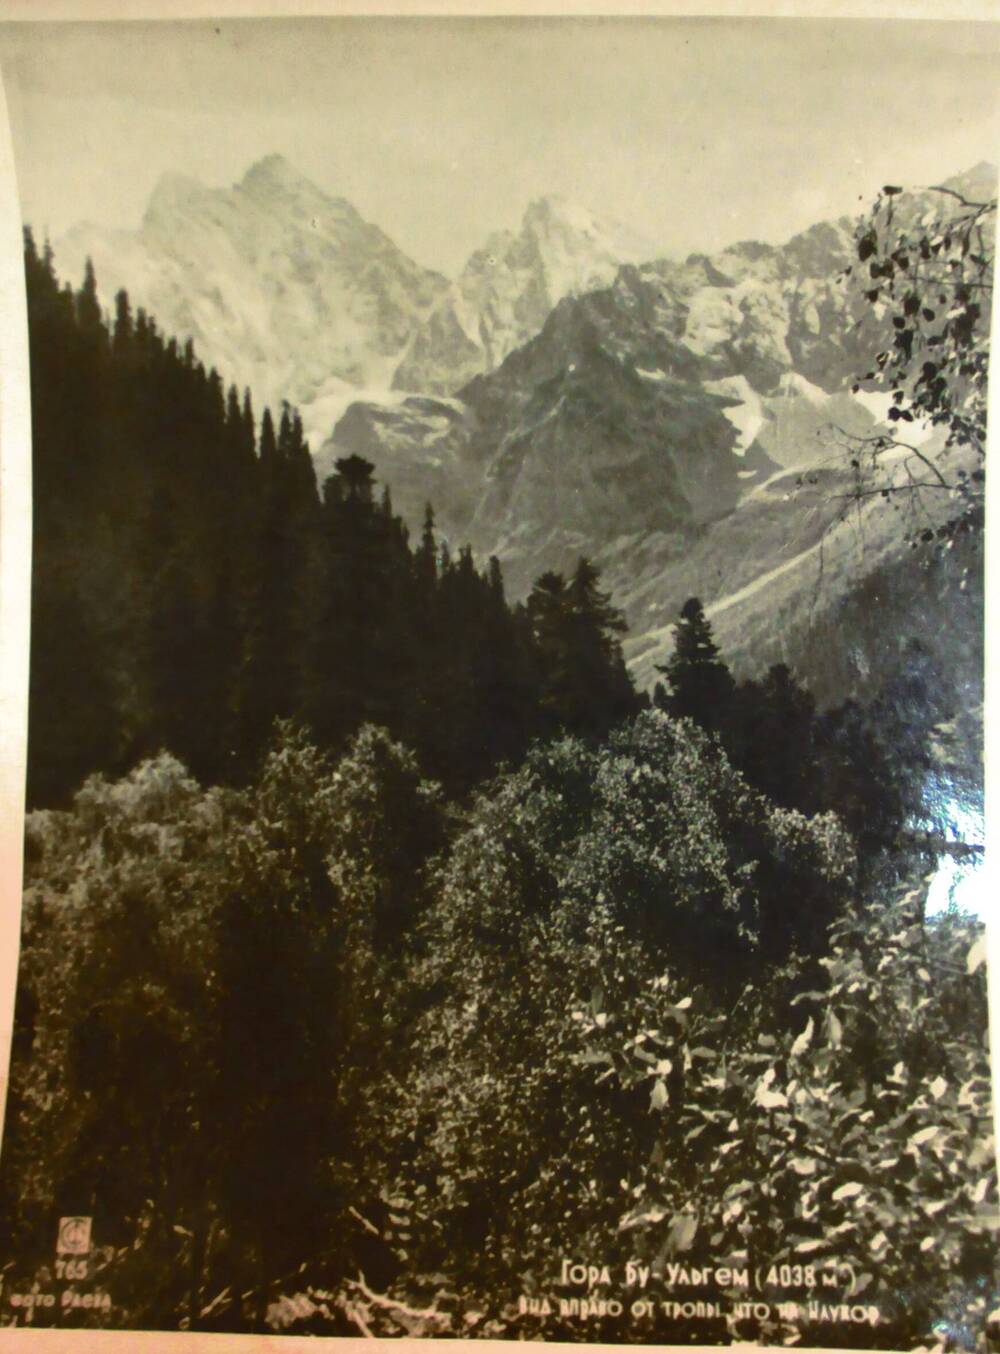 Фотография. Гора Бу-Ульгем (4038 м). Вид вправо от тропы, что на Клухор.